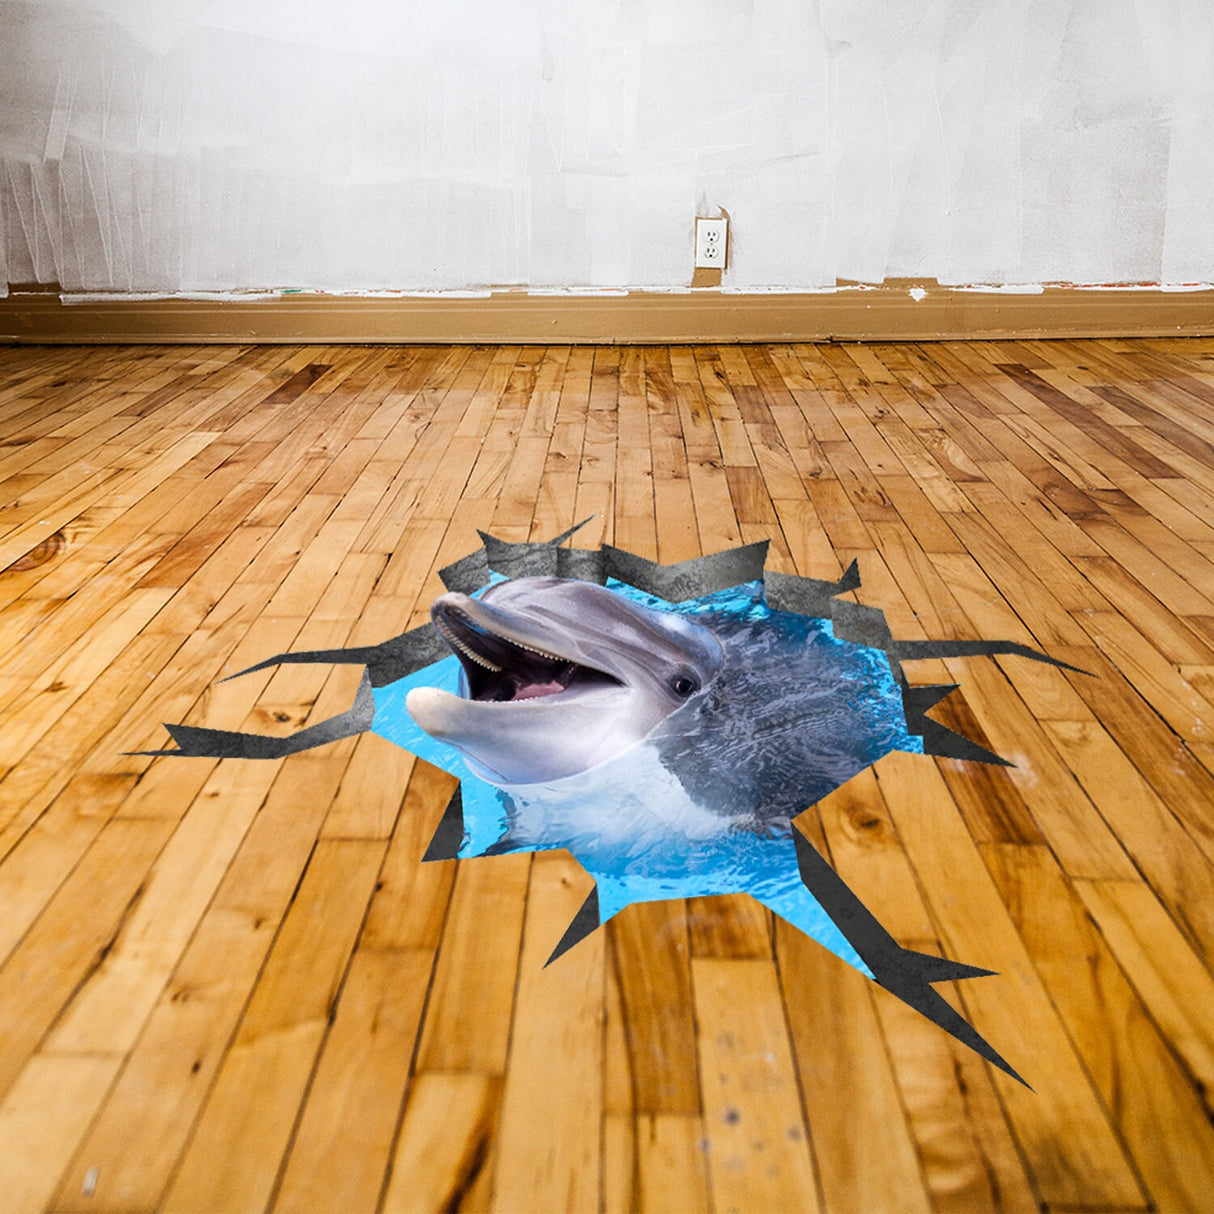 3d Floor Dolphin Decal - The Flooring Ocean Hole Sticker Decor For Kid Living Room Bathroom